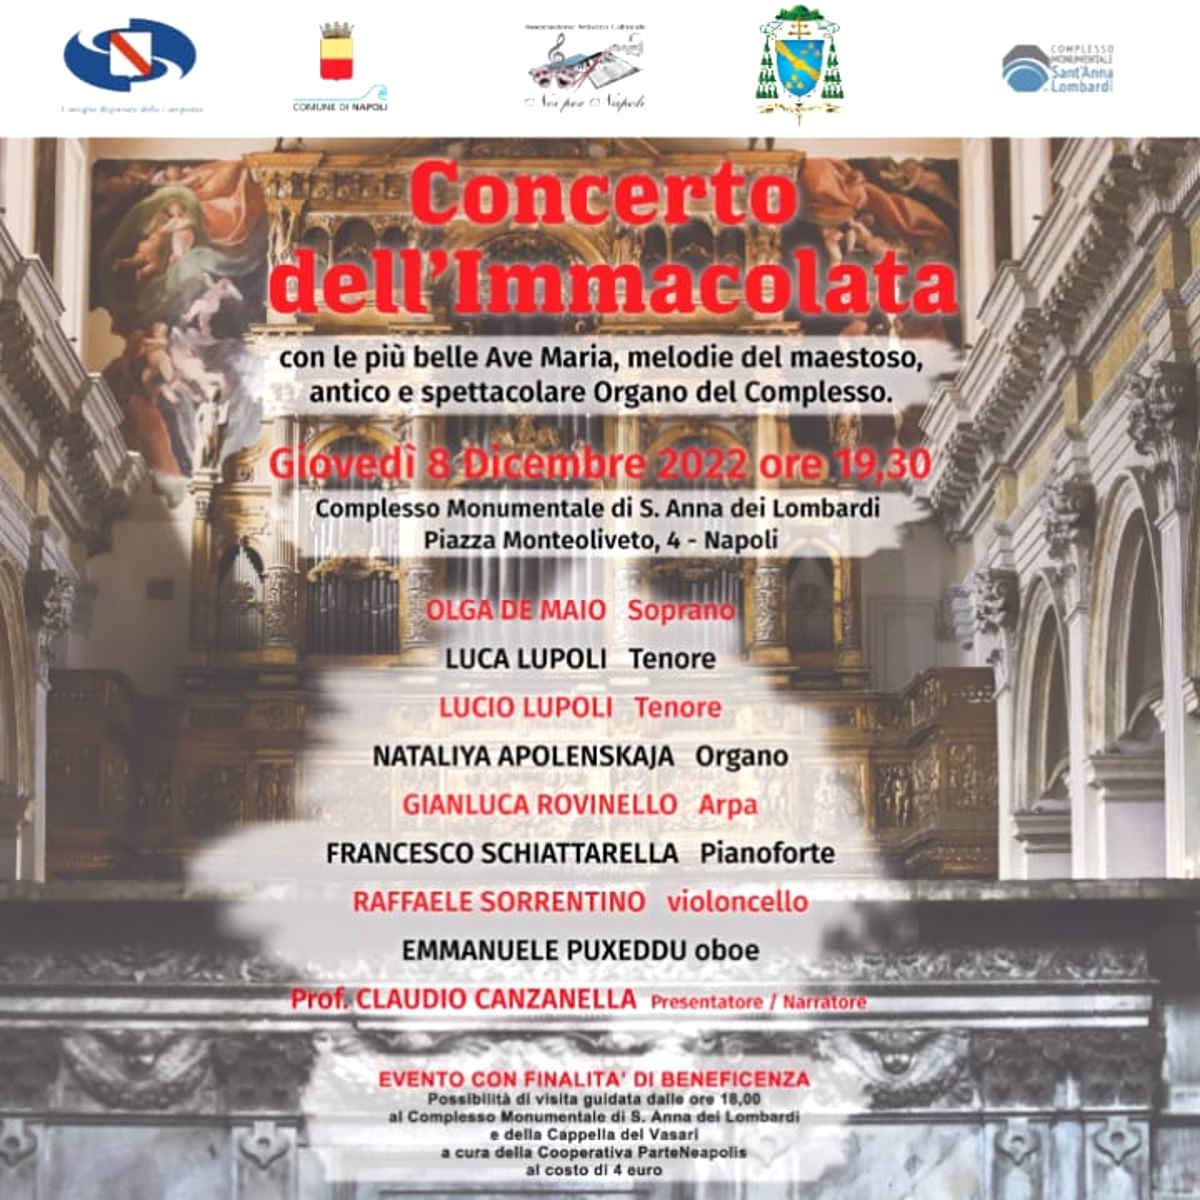 Anche nel 2022 il tradizionale Concerto dell’Immacolata di Noi per Napoli